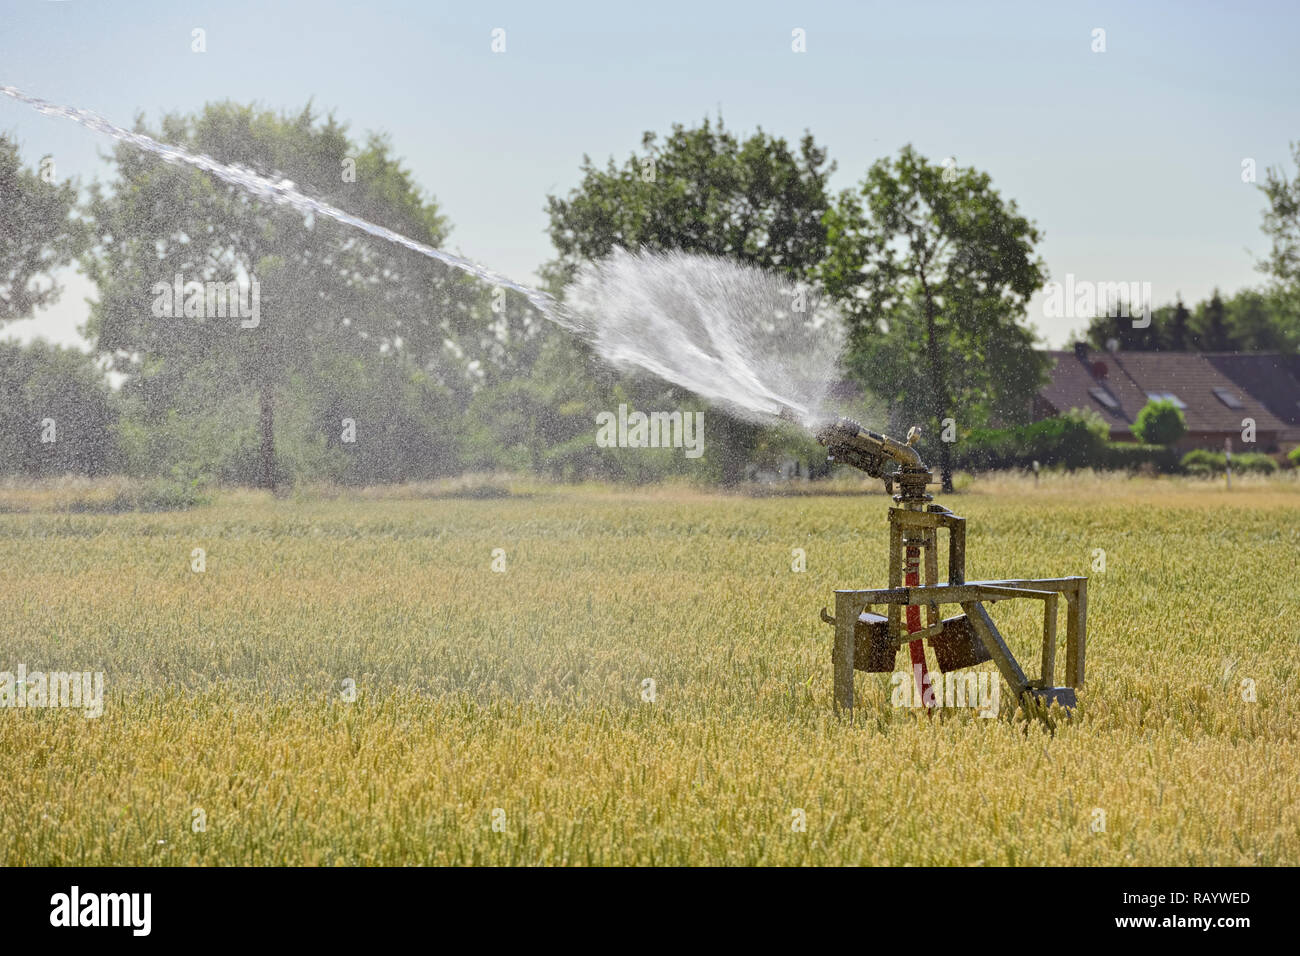 Portable irrigazione di spruzzatore macchina la spruzzatura di acqua su terreni agricoli nel corso di un periodo di siccità estate estate calda e secca 2018, l'Europa. Foto Stock